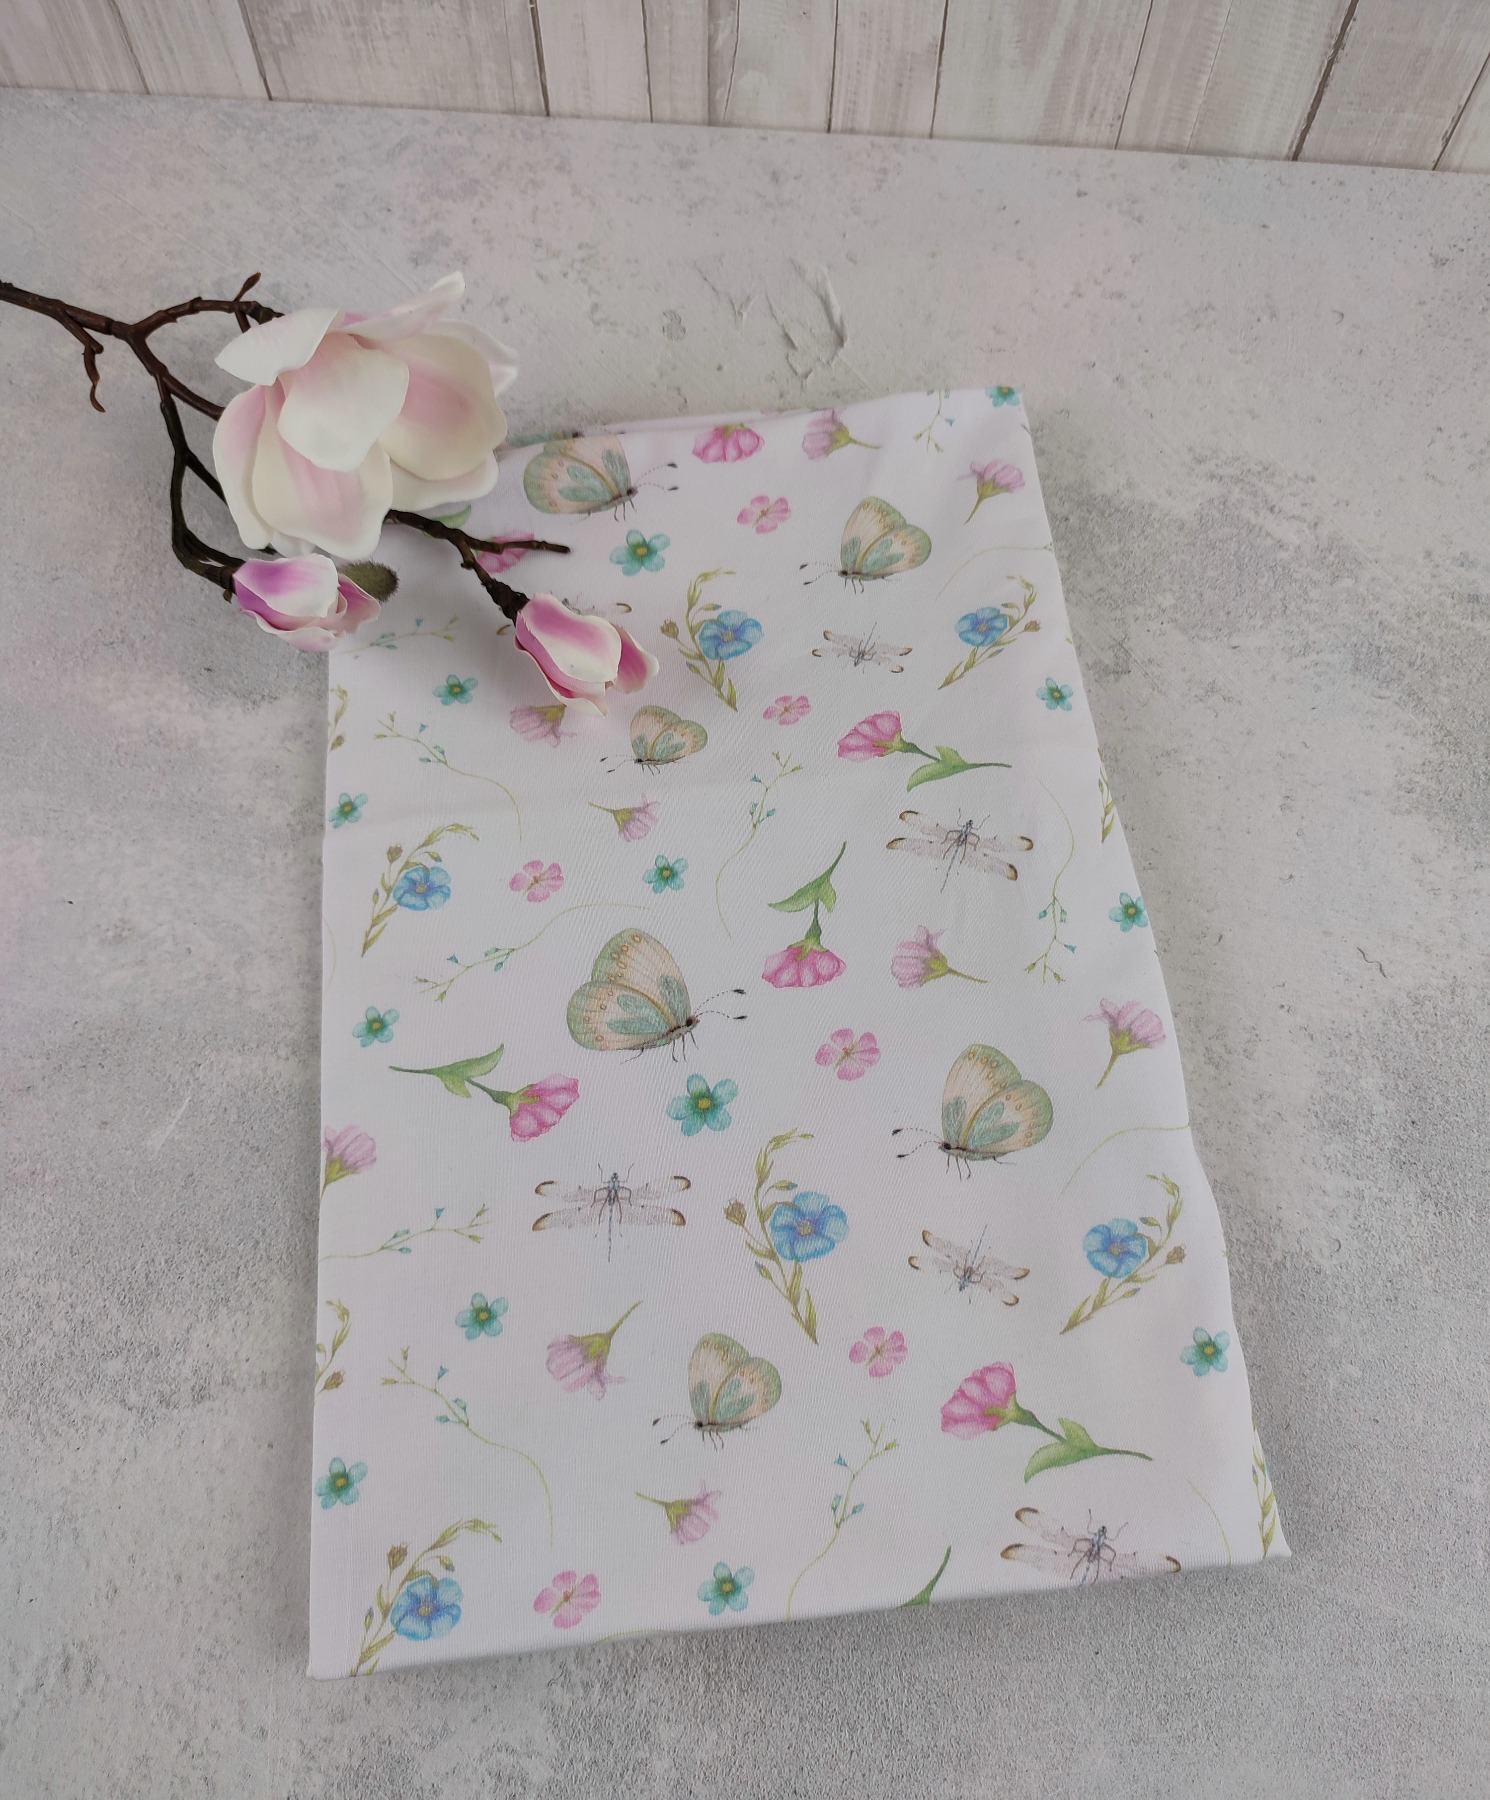 Loop Schlauchschal in weiß mit ganz zarten Blumen und Schmetterlingen in rosa und hellblau - Schal für Damen aus Jersey 5